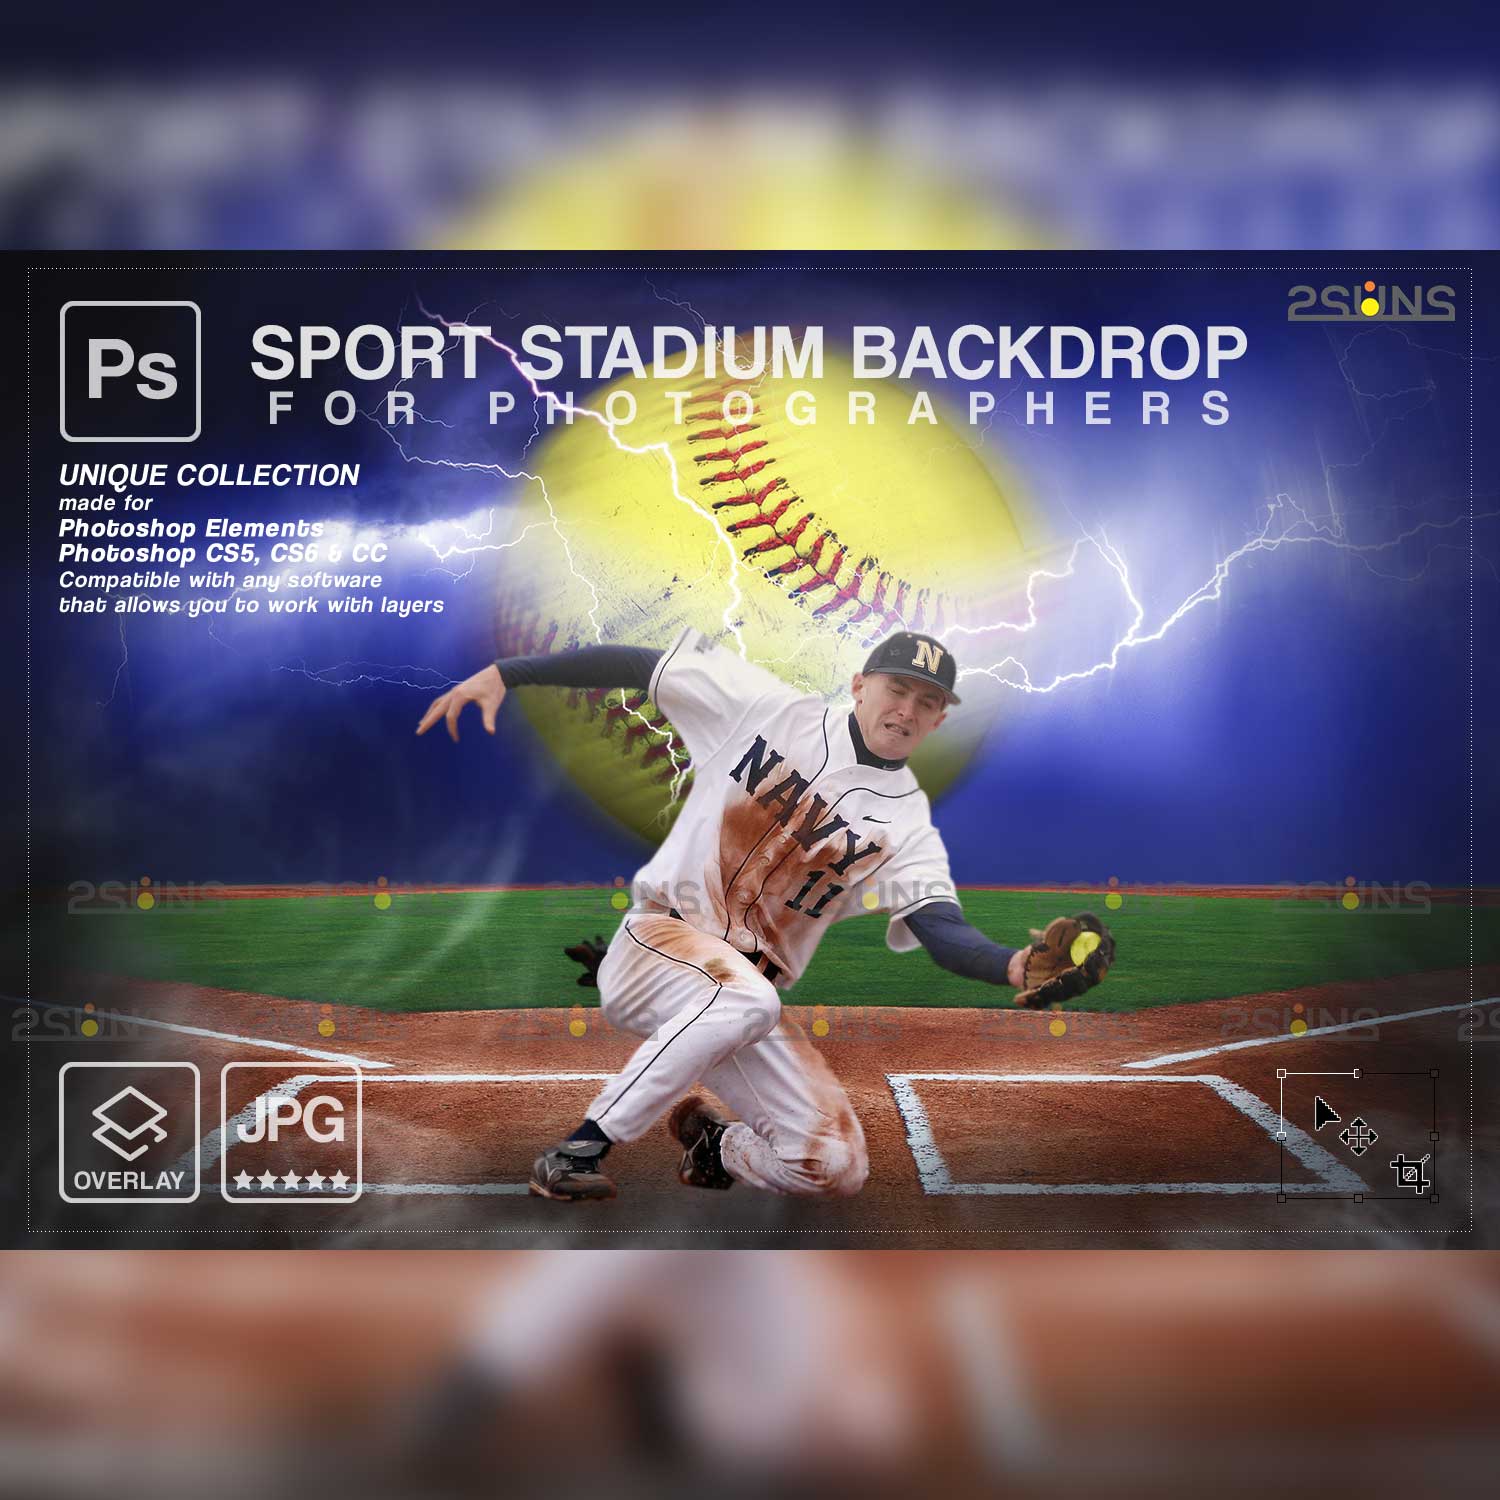 Softball Stylish Backdrop Sports Digital Background Overlay Facebook Image.